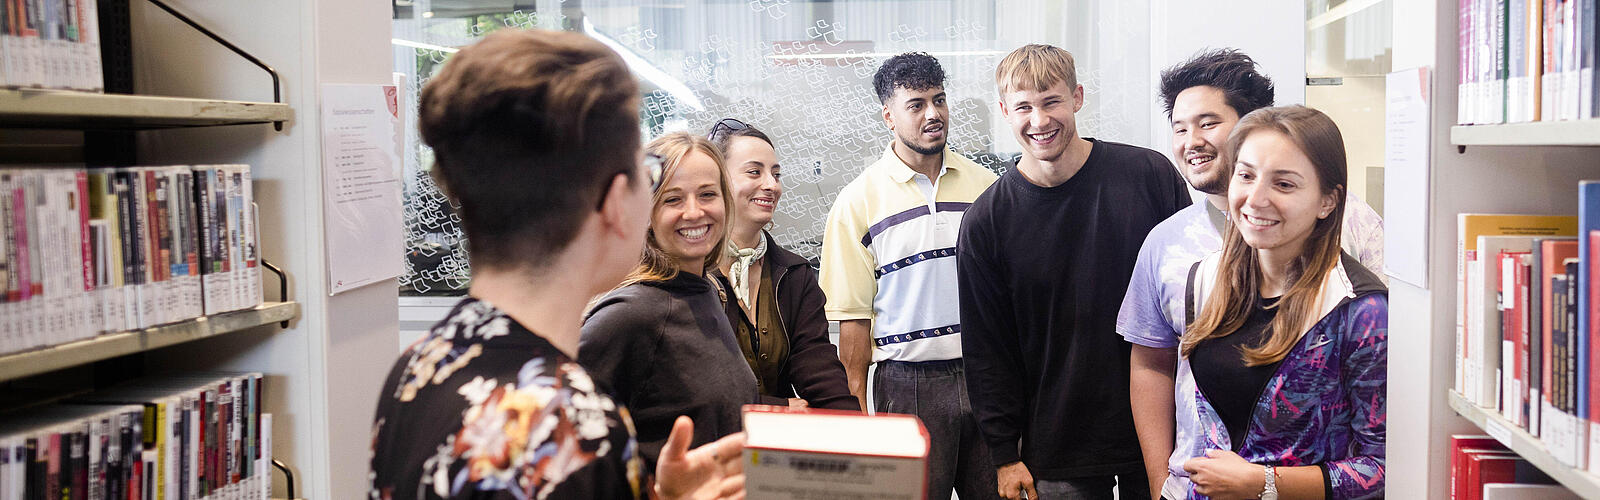 Frau zeigt einer Gruppe junger fröhlicher Menschen ein Buch in der Bibliothek